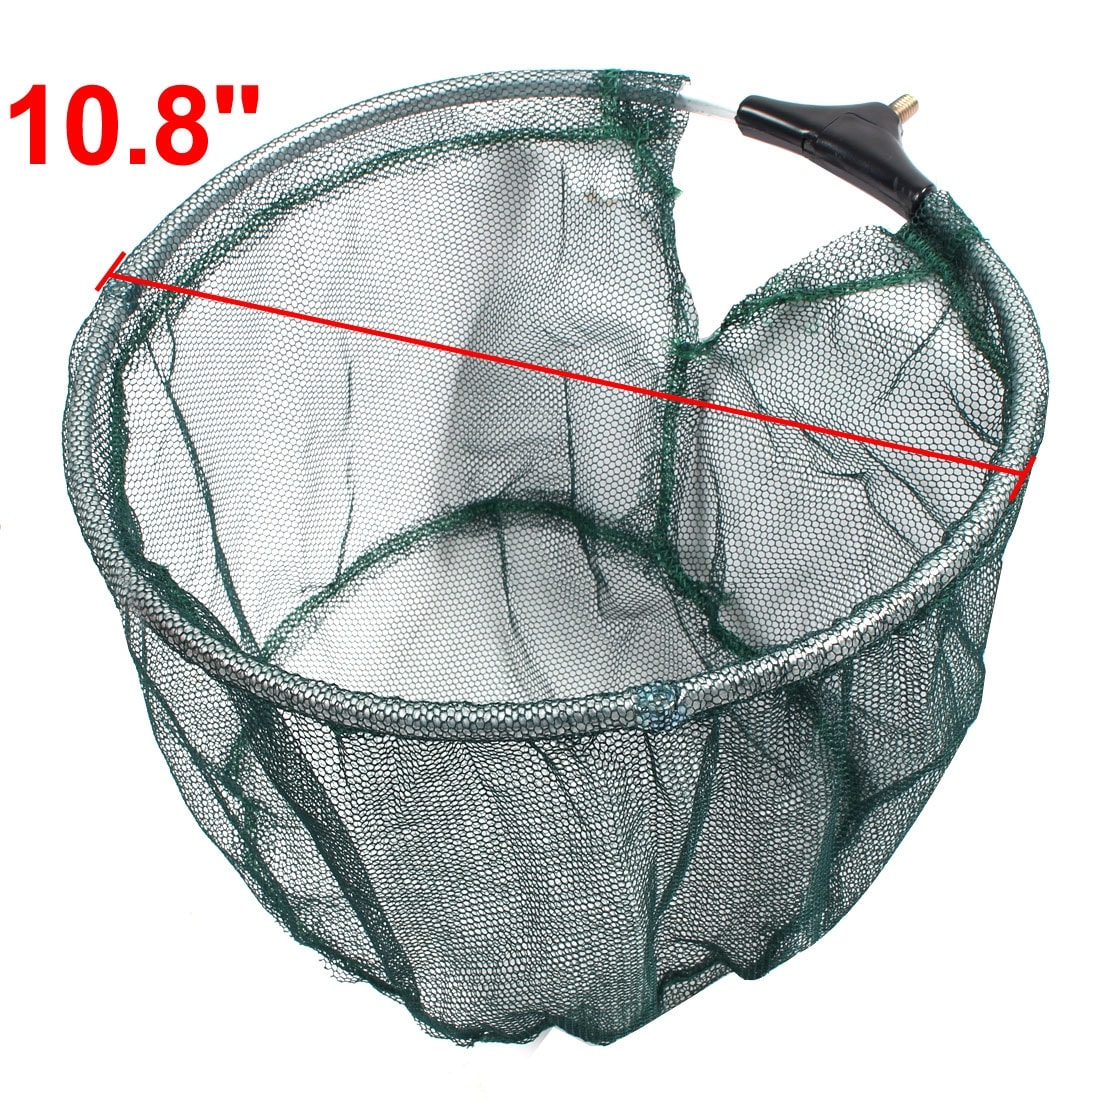 Fishman Metal Round Frame Fish Shrimp Fishing Landing Dip Net 27.5cm Dia -  Bed Bath & Beyond - 17580378